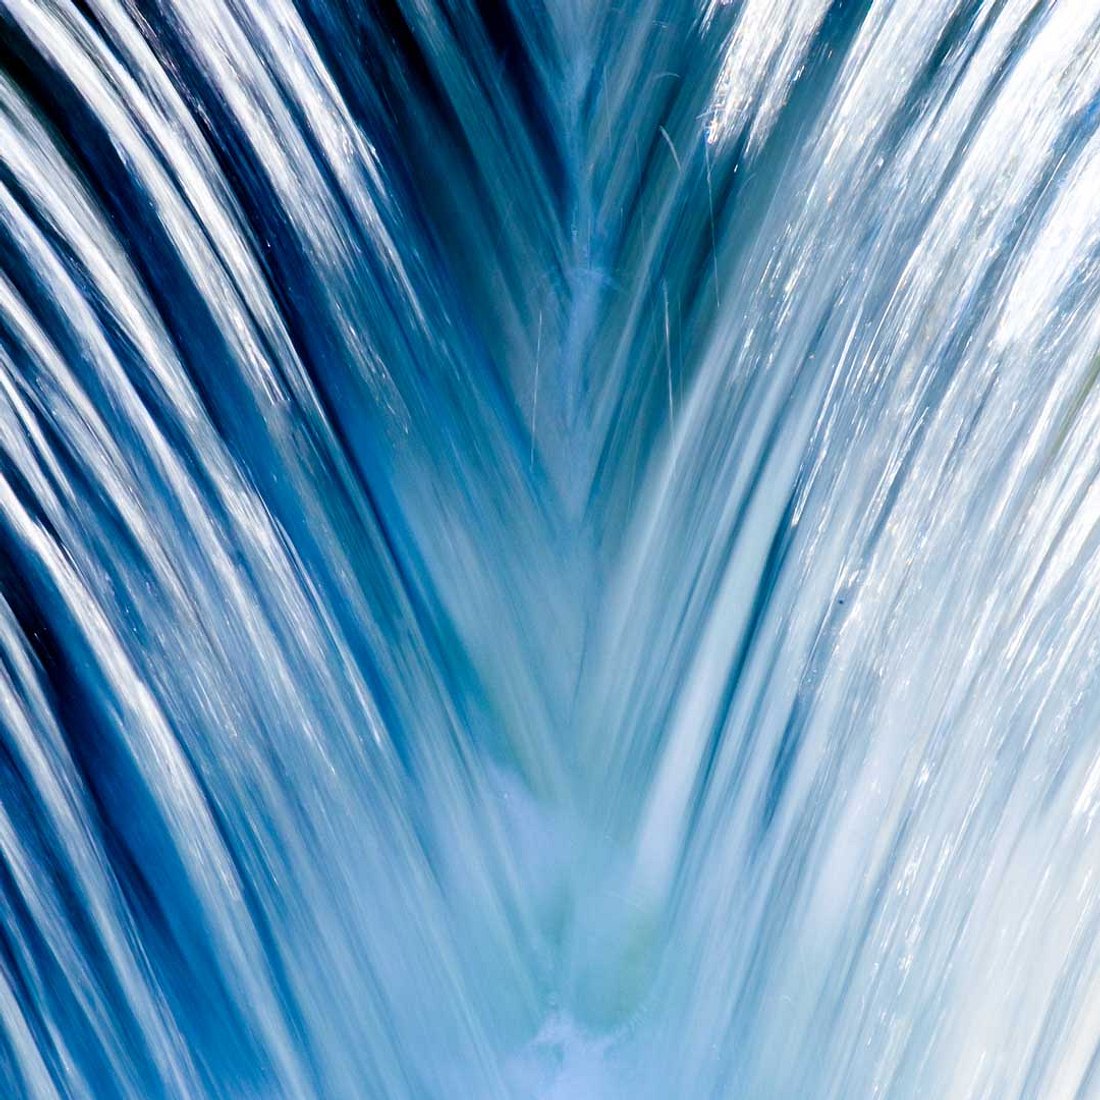 Höchster Wasserfall der Welt: 3.500 Meter!